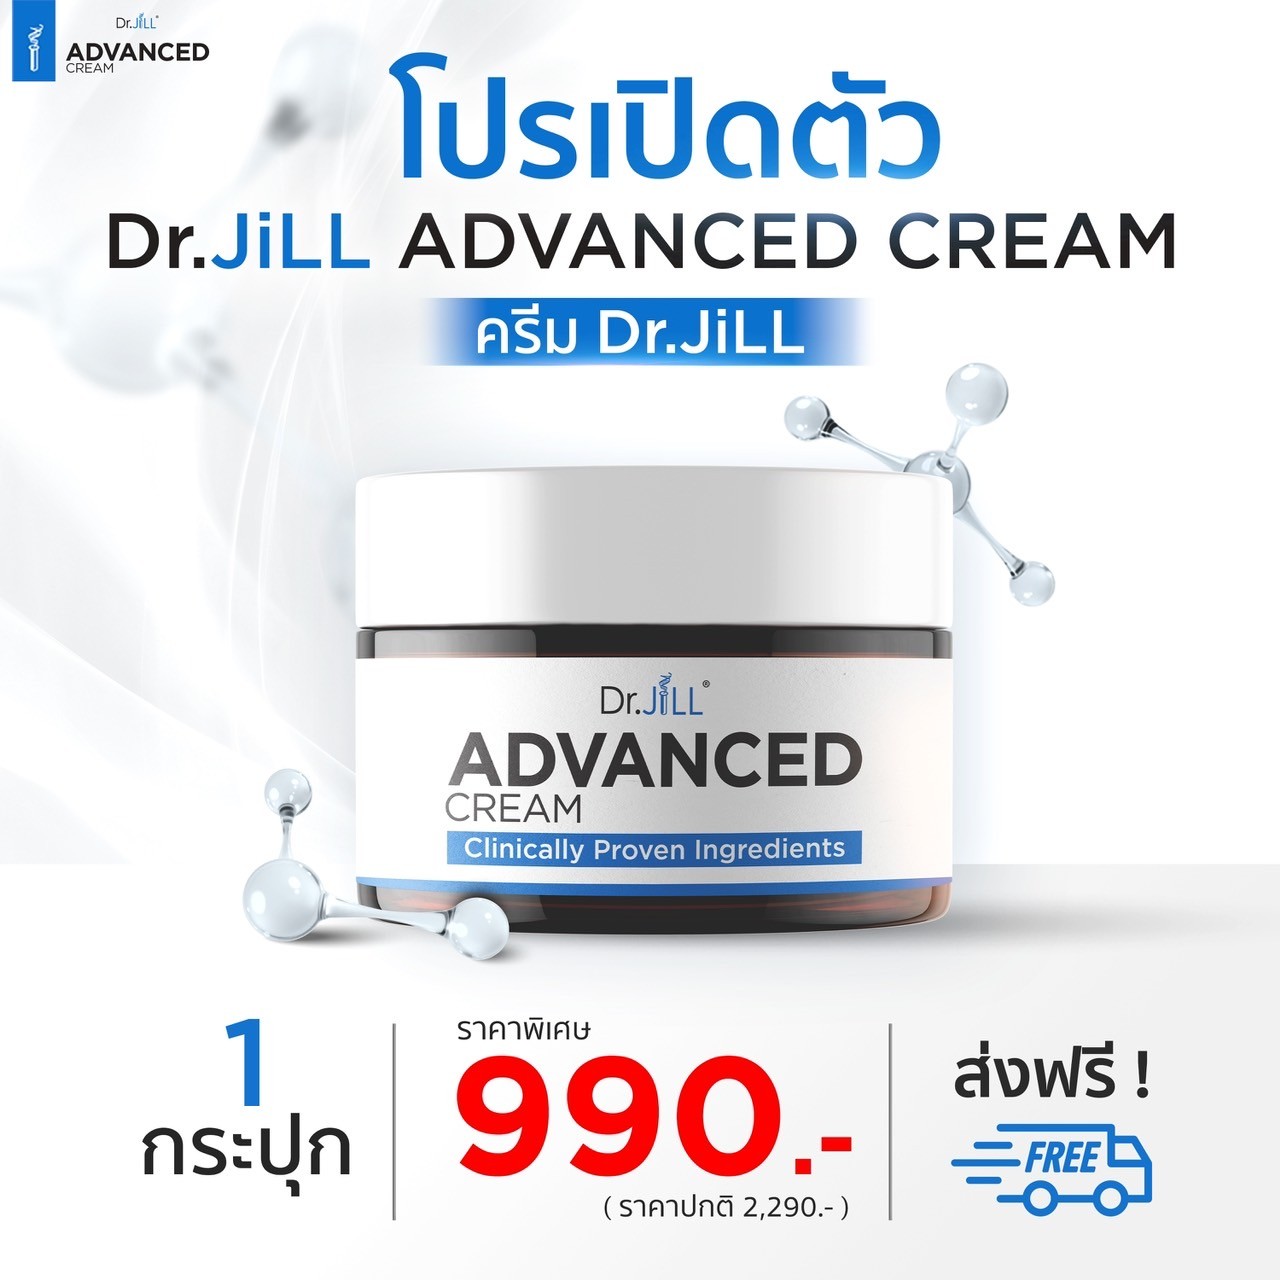 ต้องการสั่งซื้อสินค้า Dr.Jill Advanced Cream จำนวน 1 กระปุก ส่งฟรี